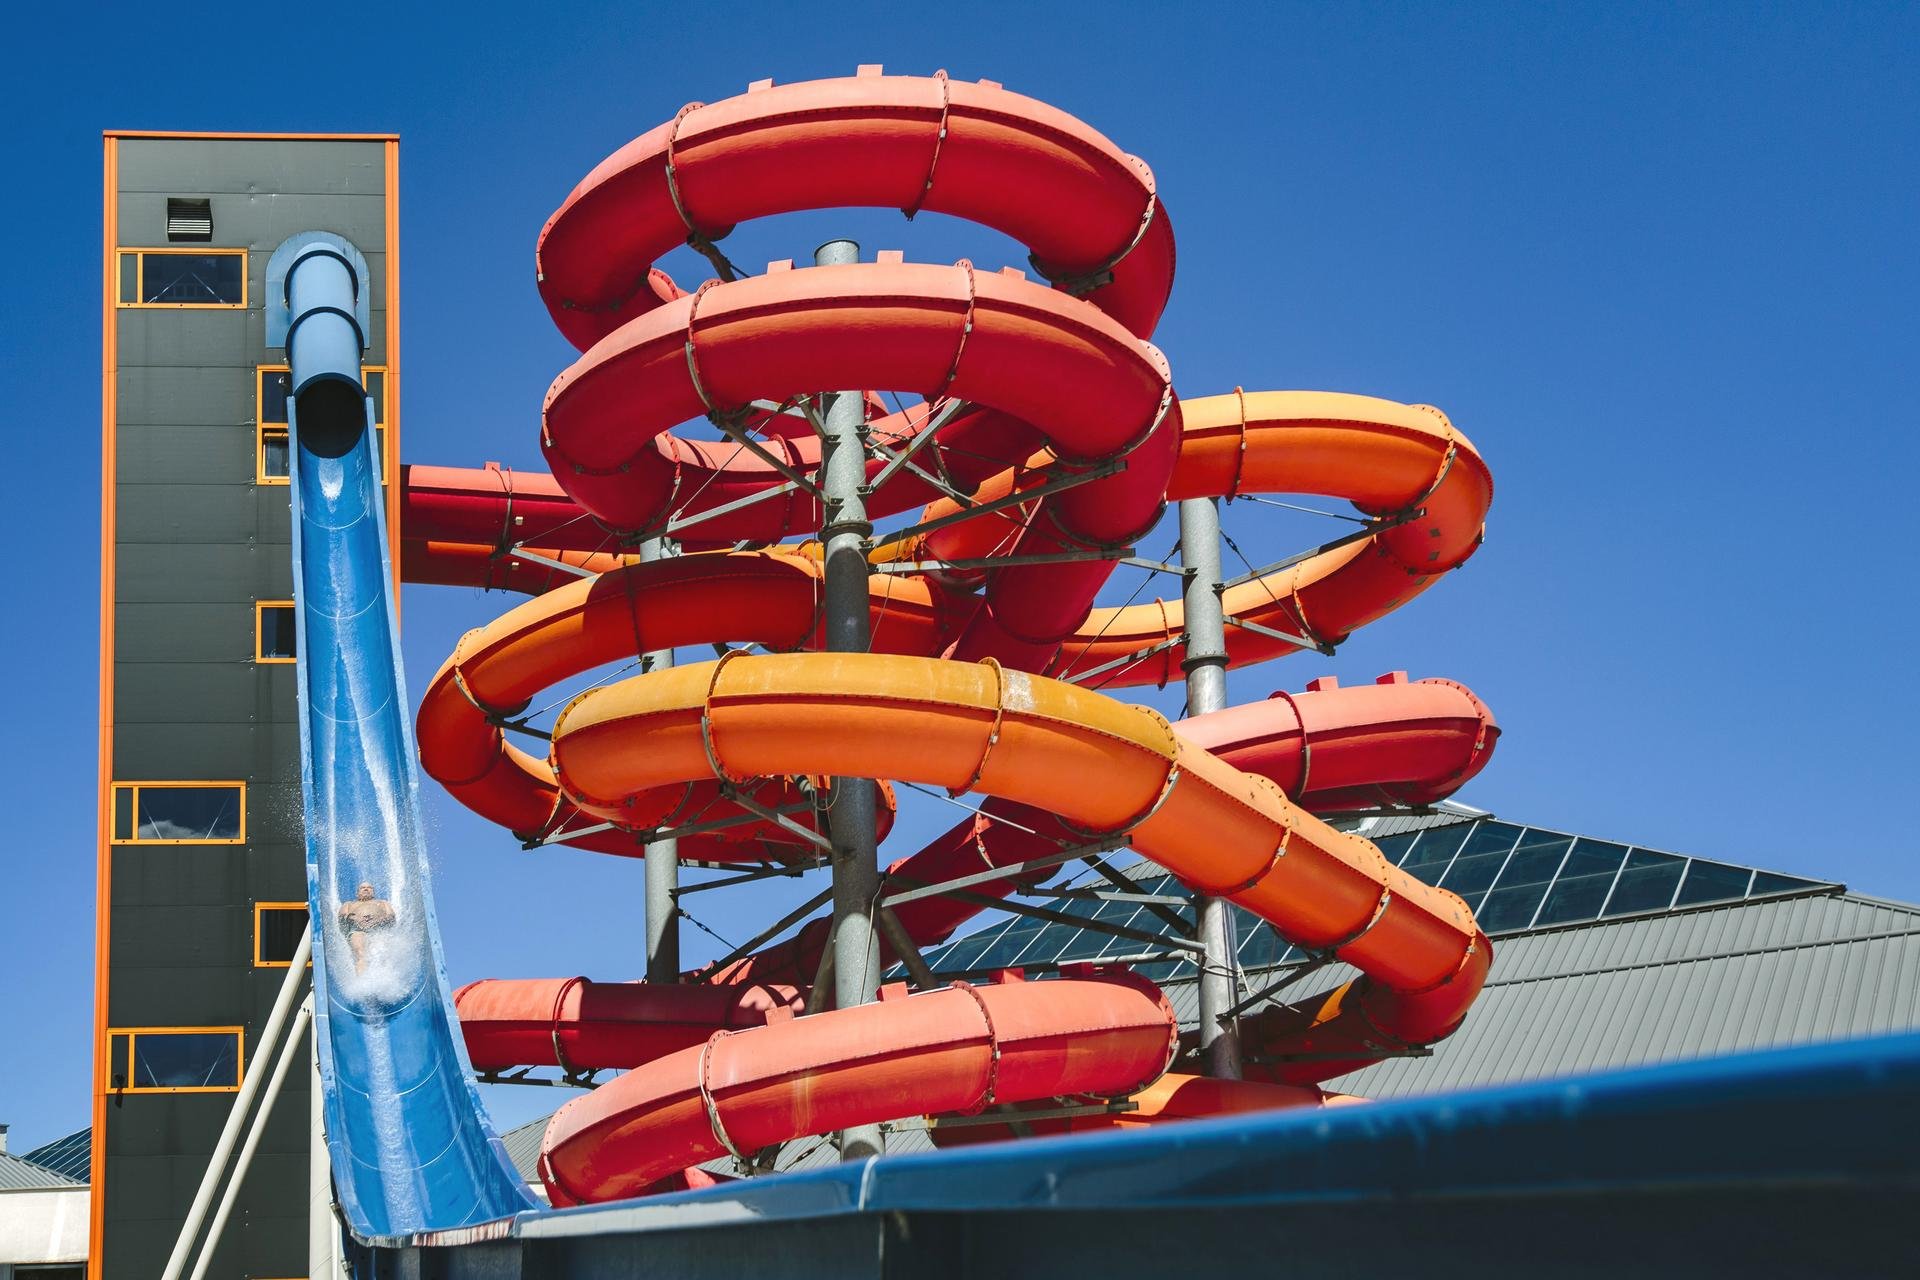 Wieża zjeżdżalni, na pierwszym planie niebieska zjeżdżalnia Kamikaze, a za nią pełne zakrętów rury czerwonej i pomarańczowej MegaZjeżdżalni. 